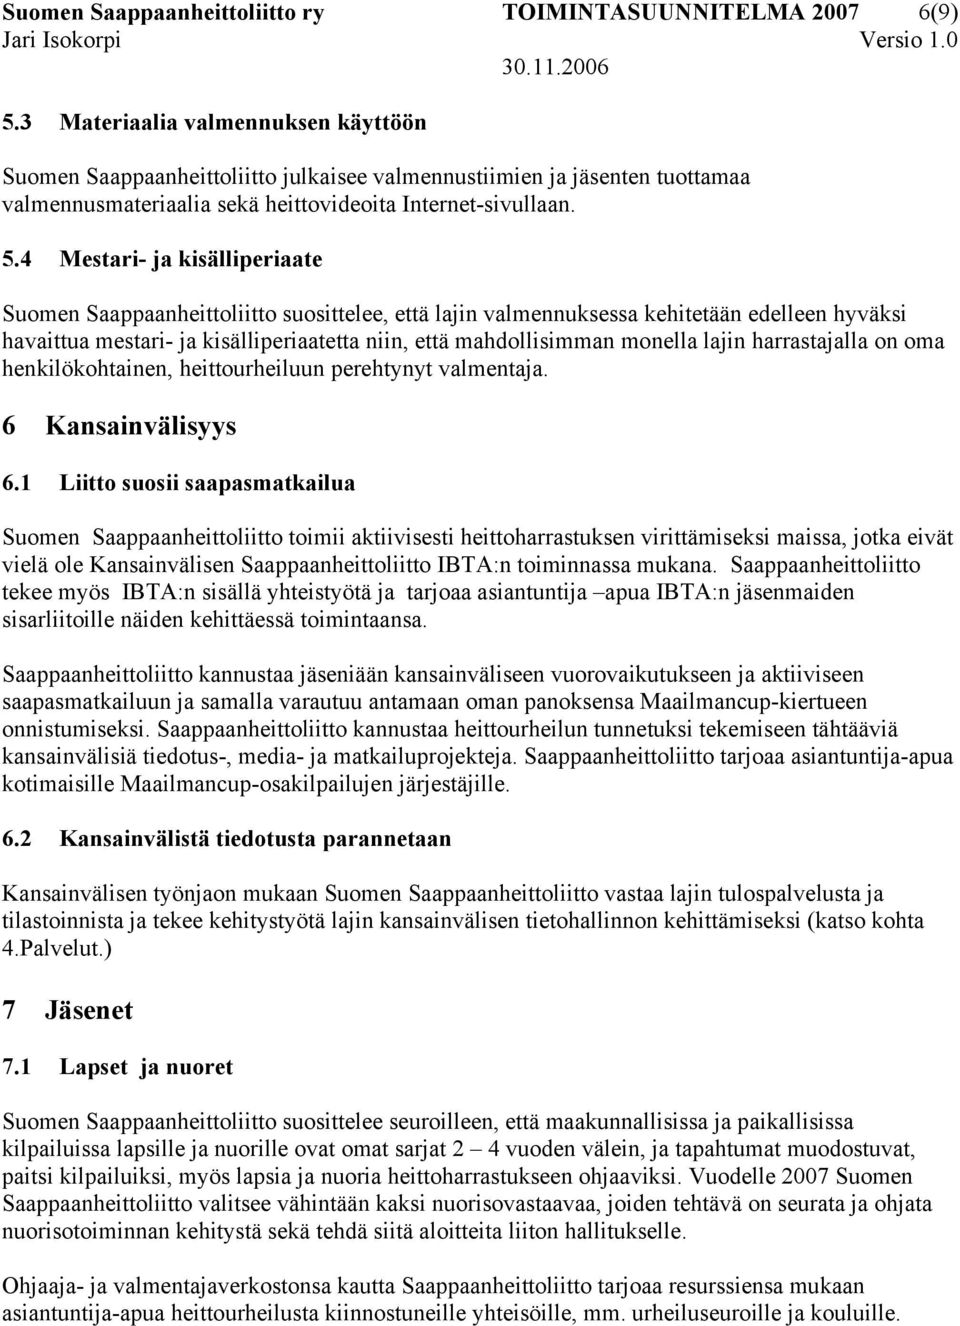 4 Mestari- ja kisälliperiaate Suomen Saappaanheittoliitto suosittelee, että lajin valmennuksessa kehitetään edelleen hyväksi havaittua mestari- ja kisälliperiaatetta niin, että mahdollisimman monella